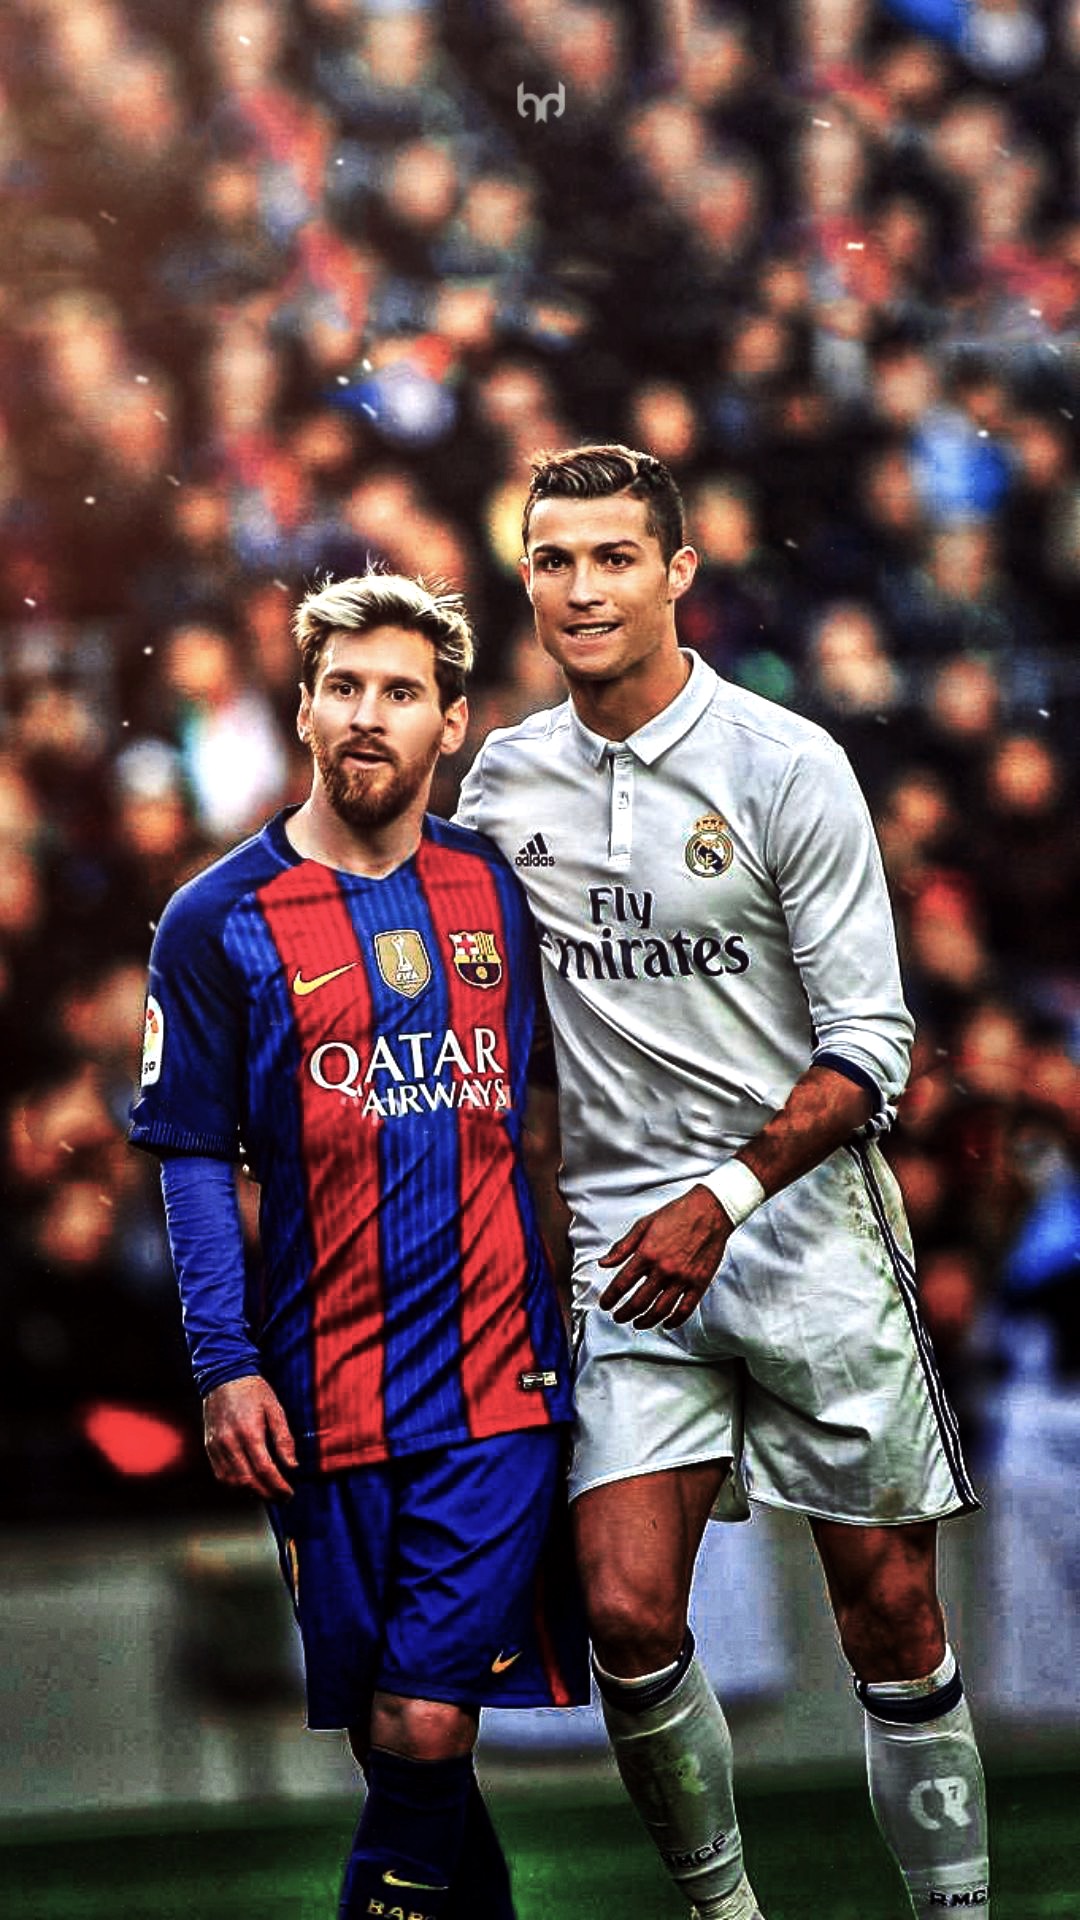 Những hình nền Messi và Ronaldo có bề dày lịch sử sẽ mang đến cho bạn những trải nghiệm thú vị và đầy ý nghĩa. Bạn sẽ cảm nhận được sự nổi tiếng và tinh túy của hai ngôi sao bóng đá này trên điện thoại của mình. Tải xuống ngay hôm nay và thưởng thức những khoảnh khắc đáng nhớ trên điện thoại của bạn.